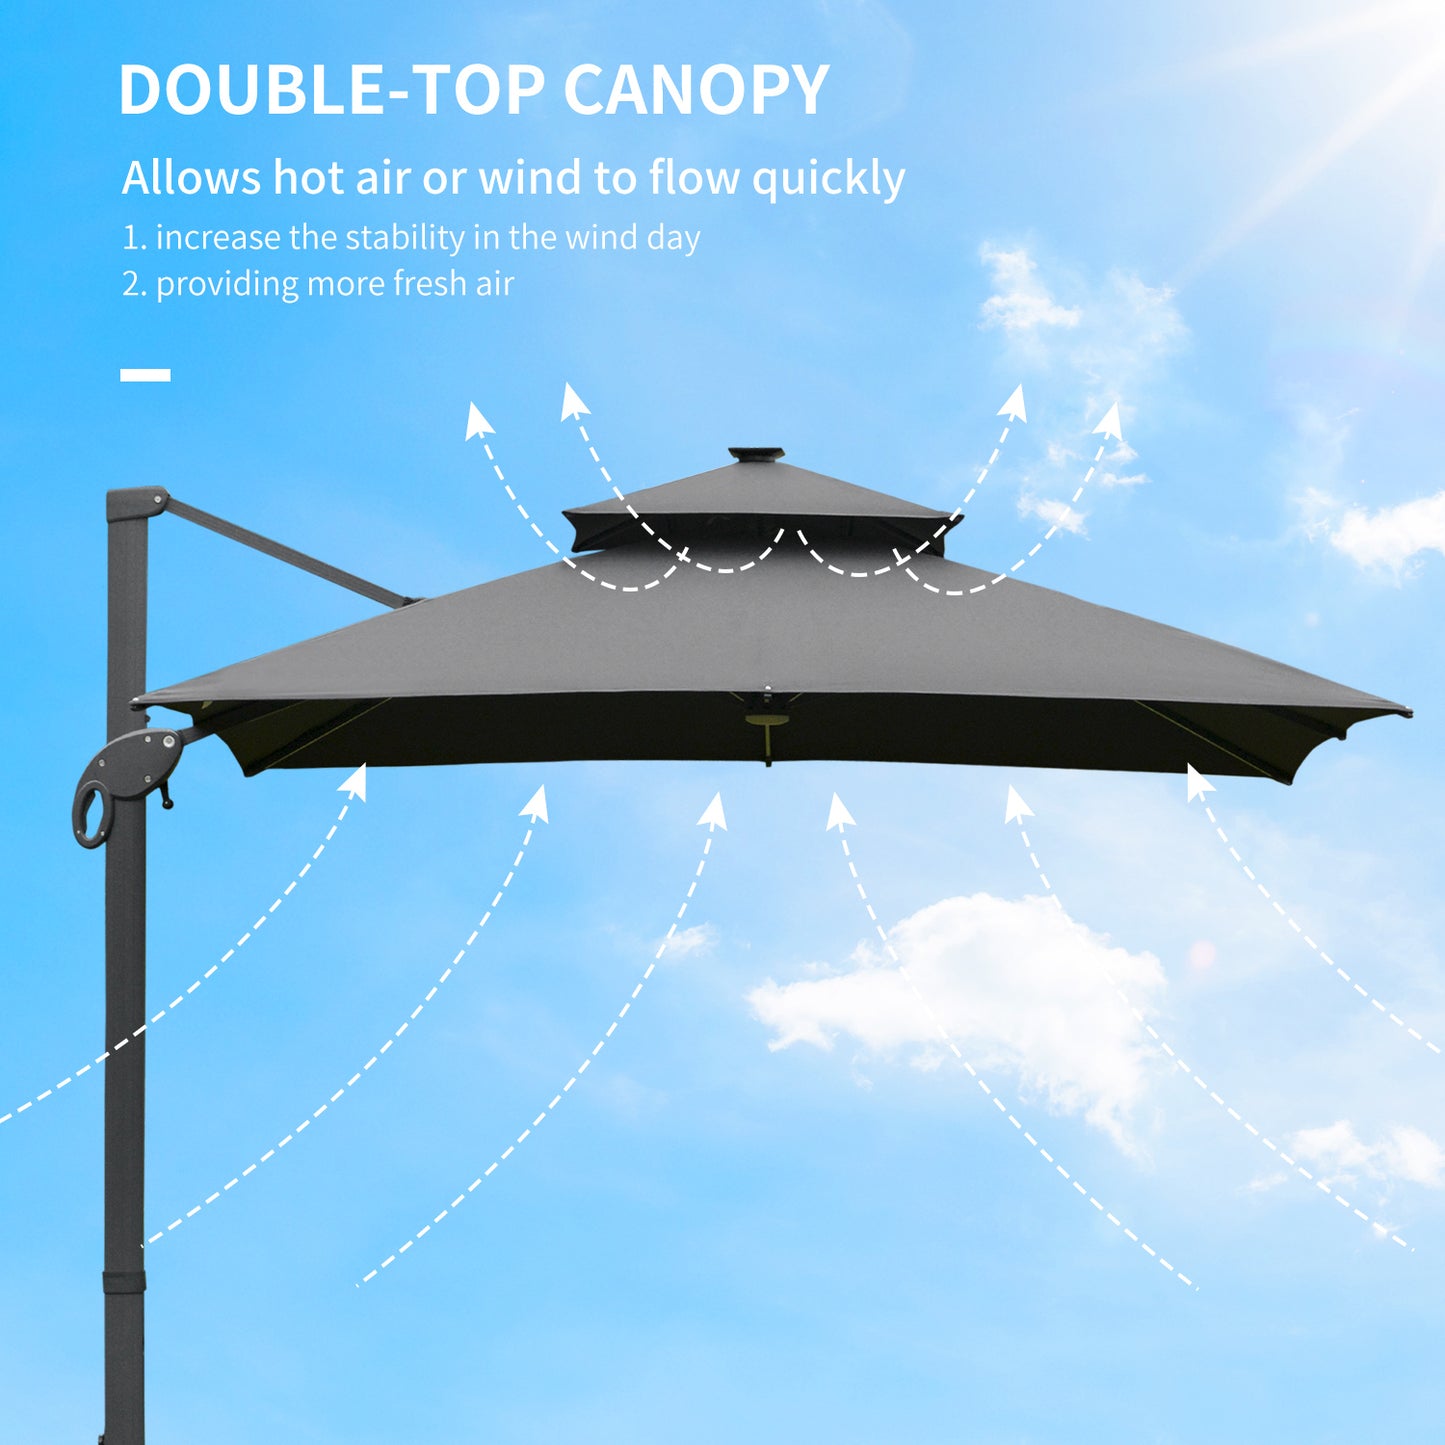 Outsunny 3 x 3(m) Cantilever Roma Parasol Garden Sun Umbrella Outdoor Patio with LED Solar Light Cross Base 360° Rotating for Backyard Dark Gray